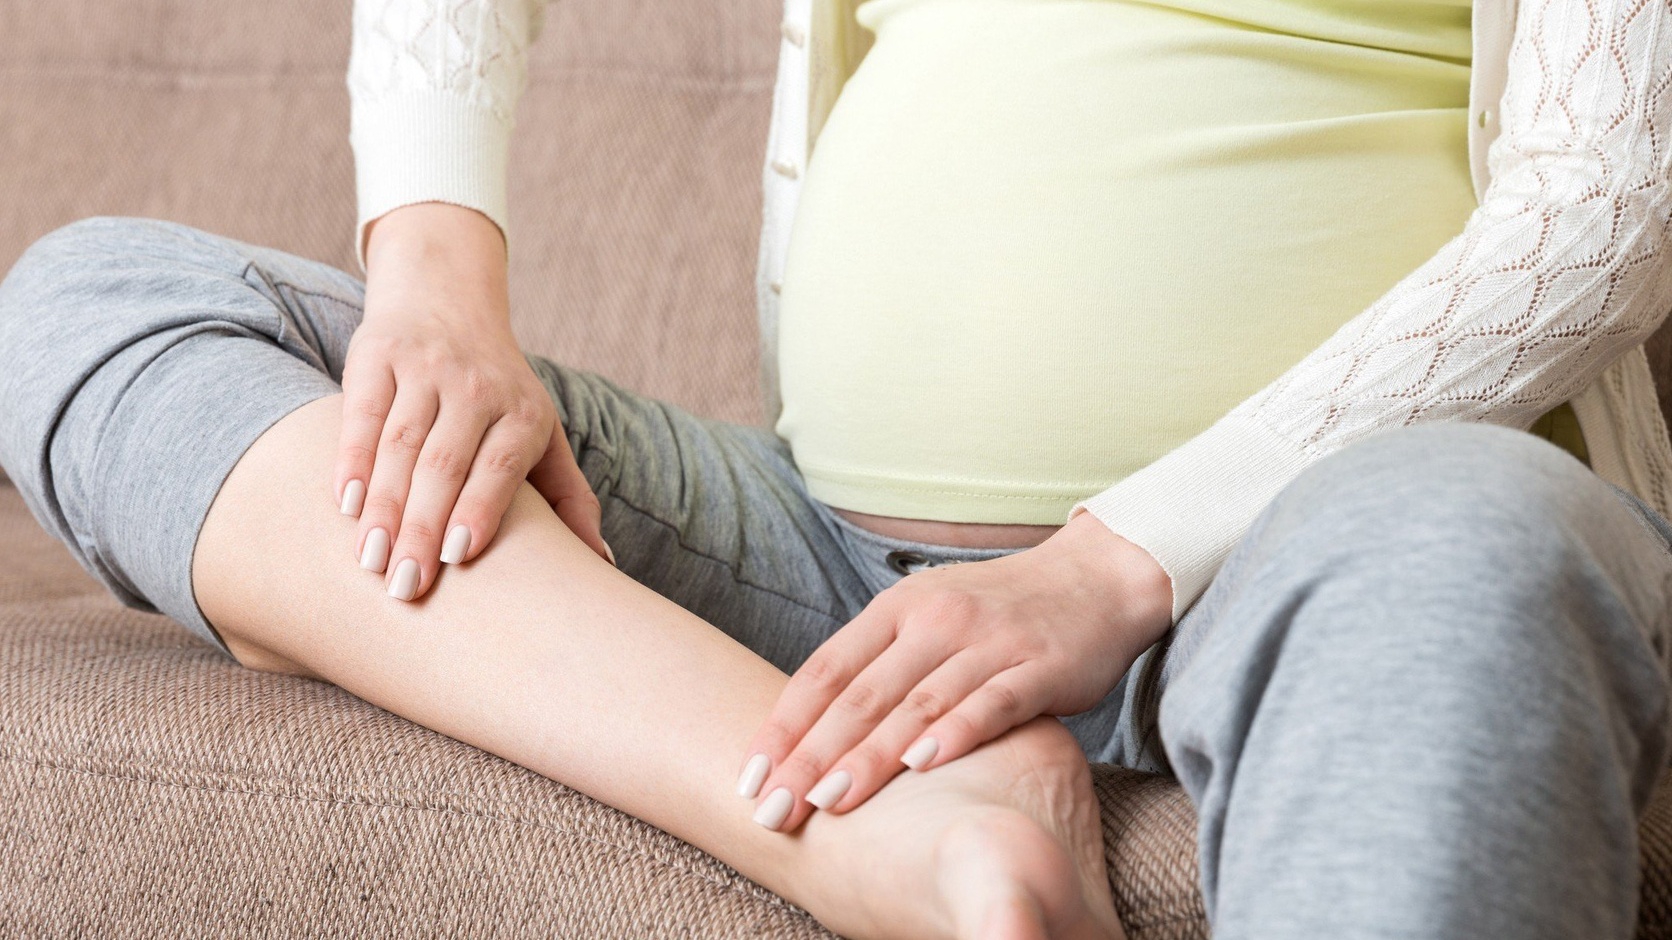 Tại sao bà bầu có thể bị đau bắp chân trong 3 tháng giữa thai kỳ?
